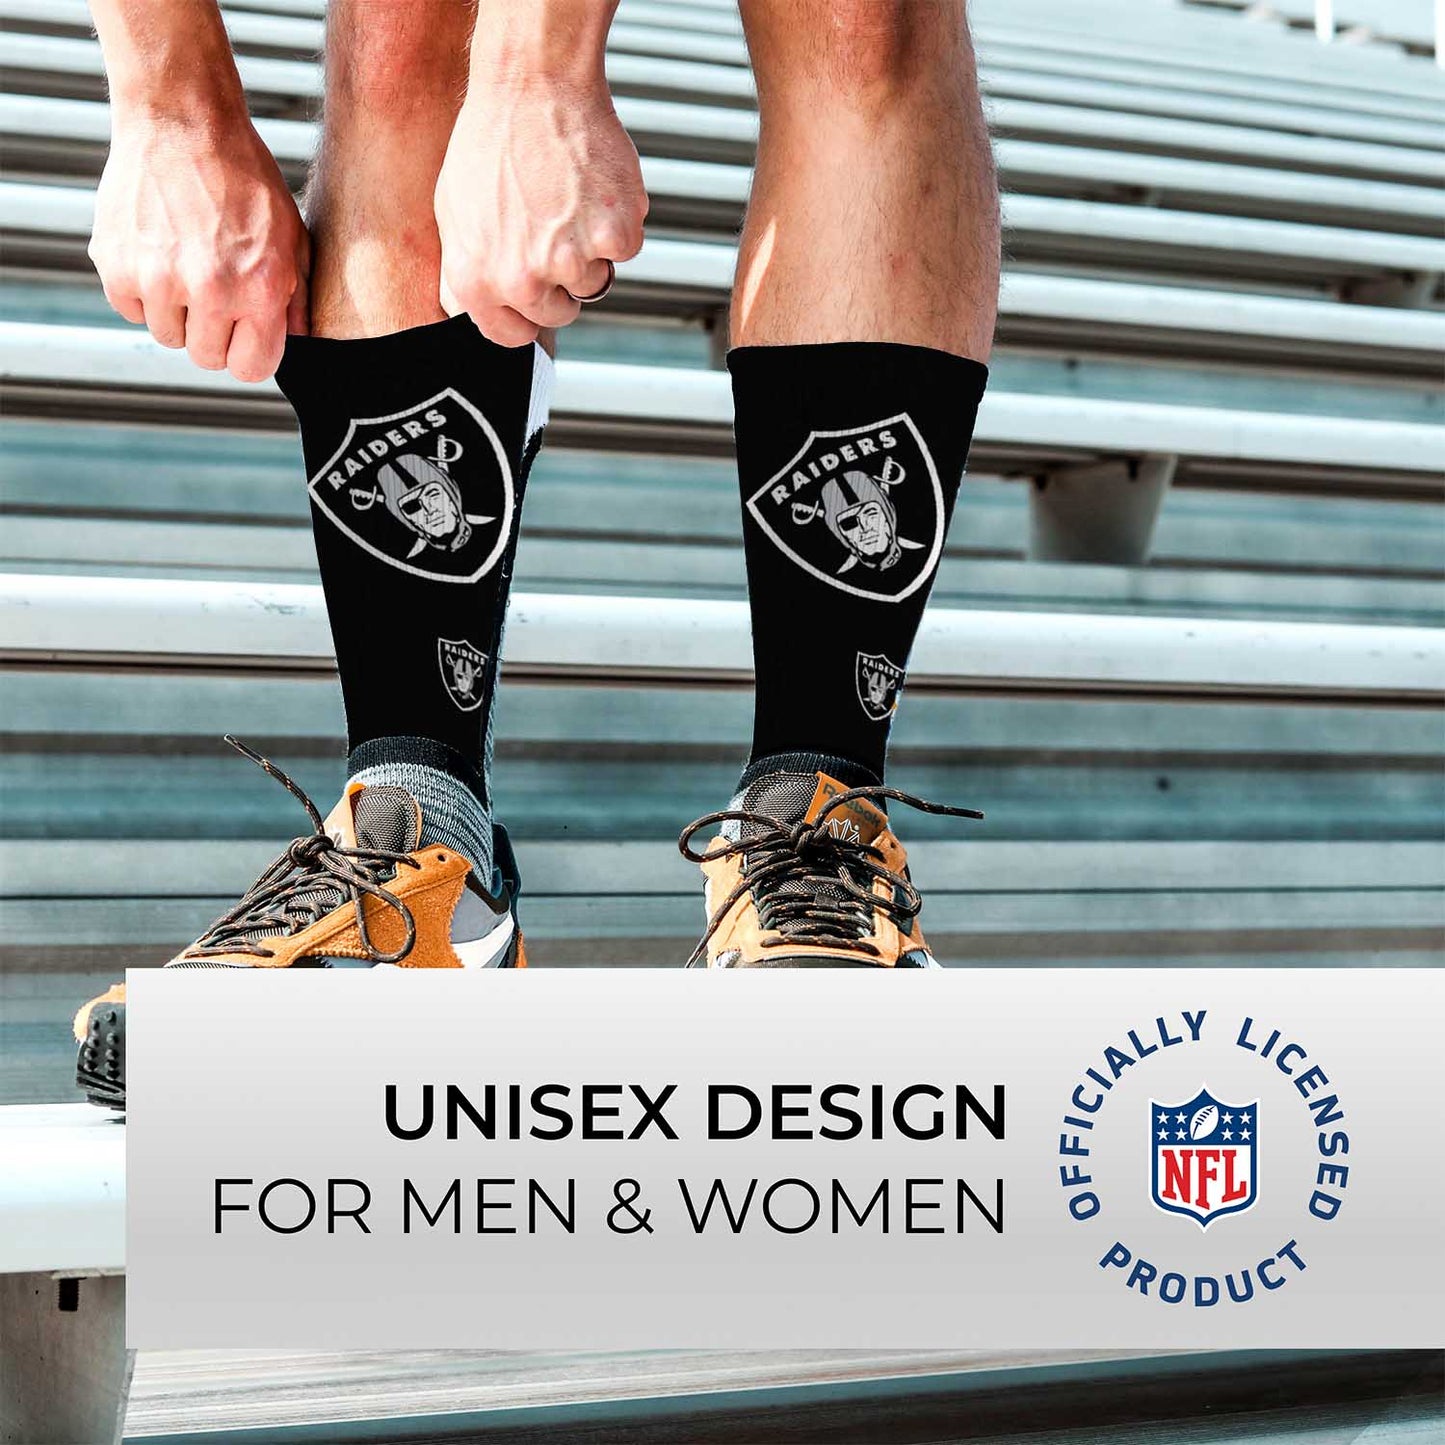 Las Vegas Raiders NFL Adult Curve Socks - Black